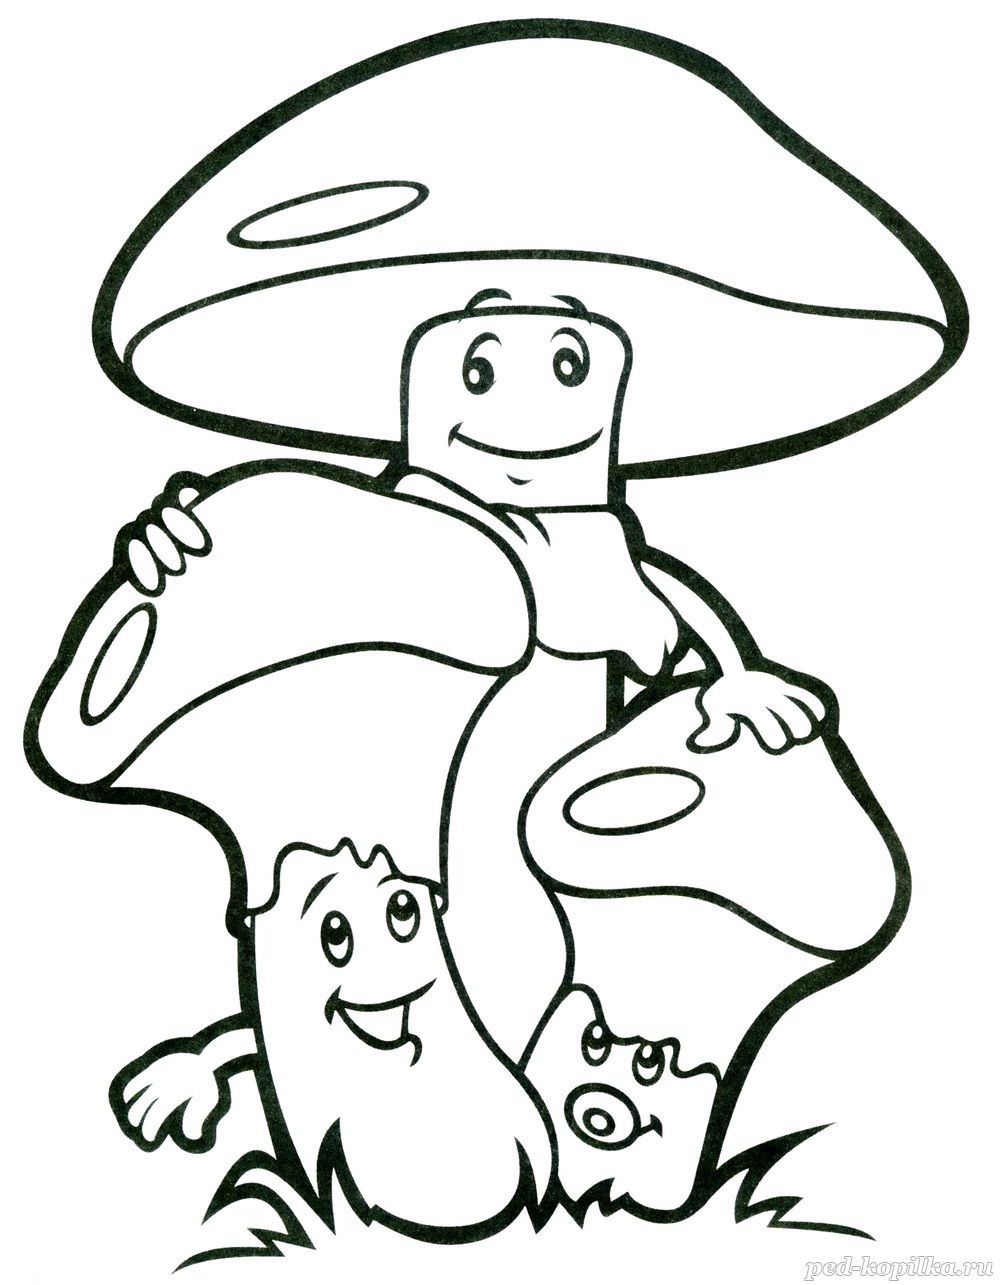  раскраски на тему грибы для детей        раскраски с грибами на тему окружающий мир для мальчиков и девочек. Познавательные и интересные раскраски с грибами для детей               